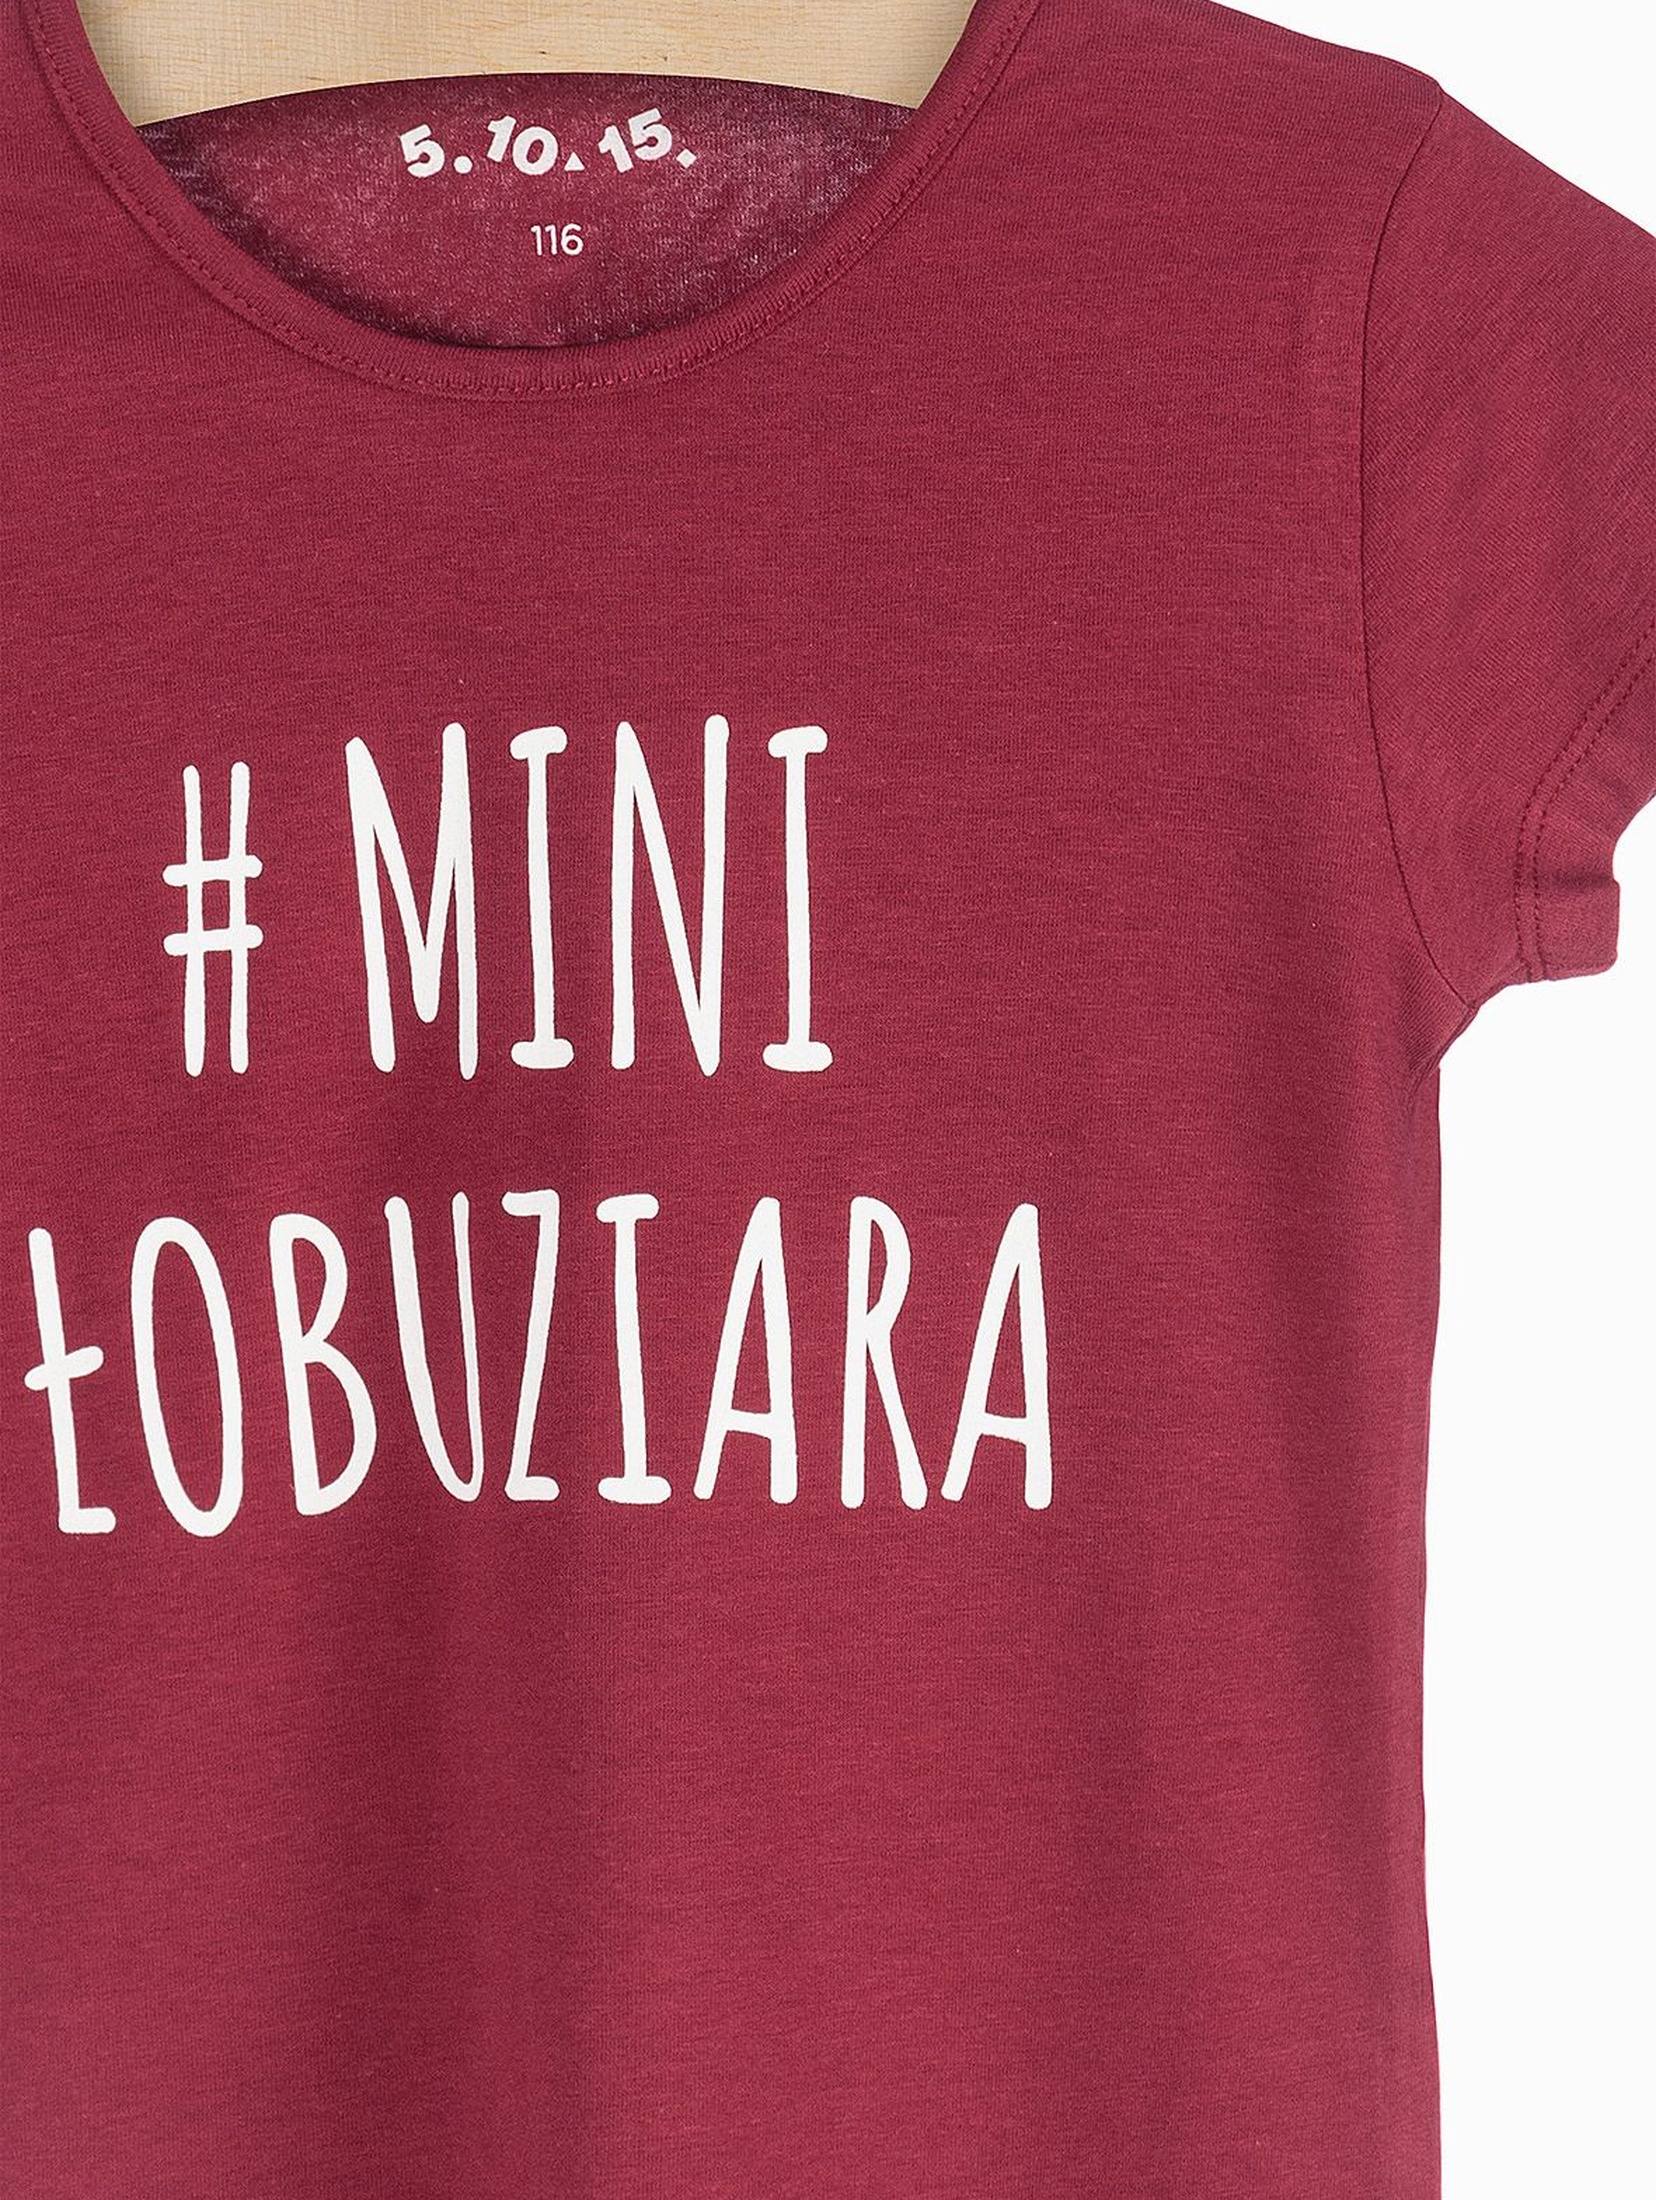 T-shirt dziewczęcy -#Mini Łobuziara- bordowy